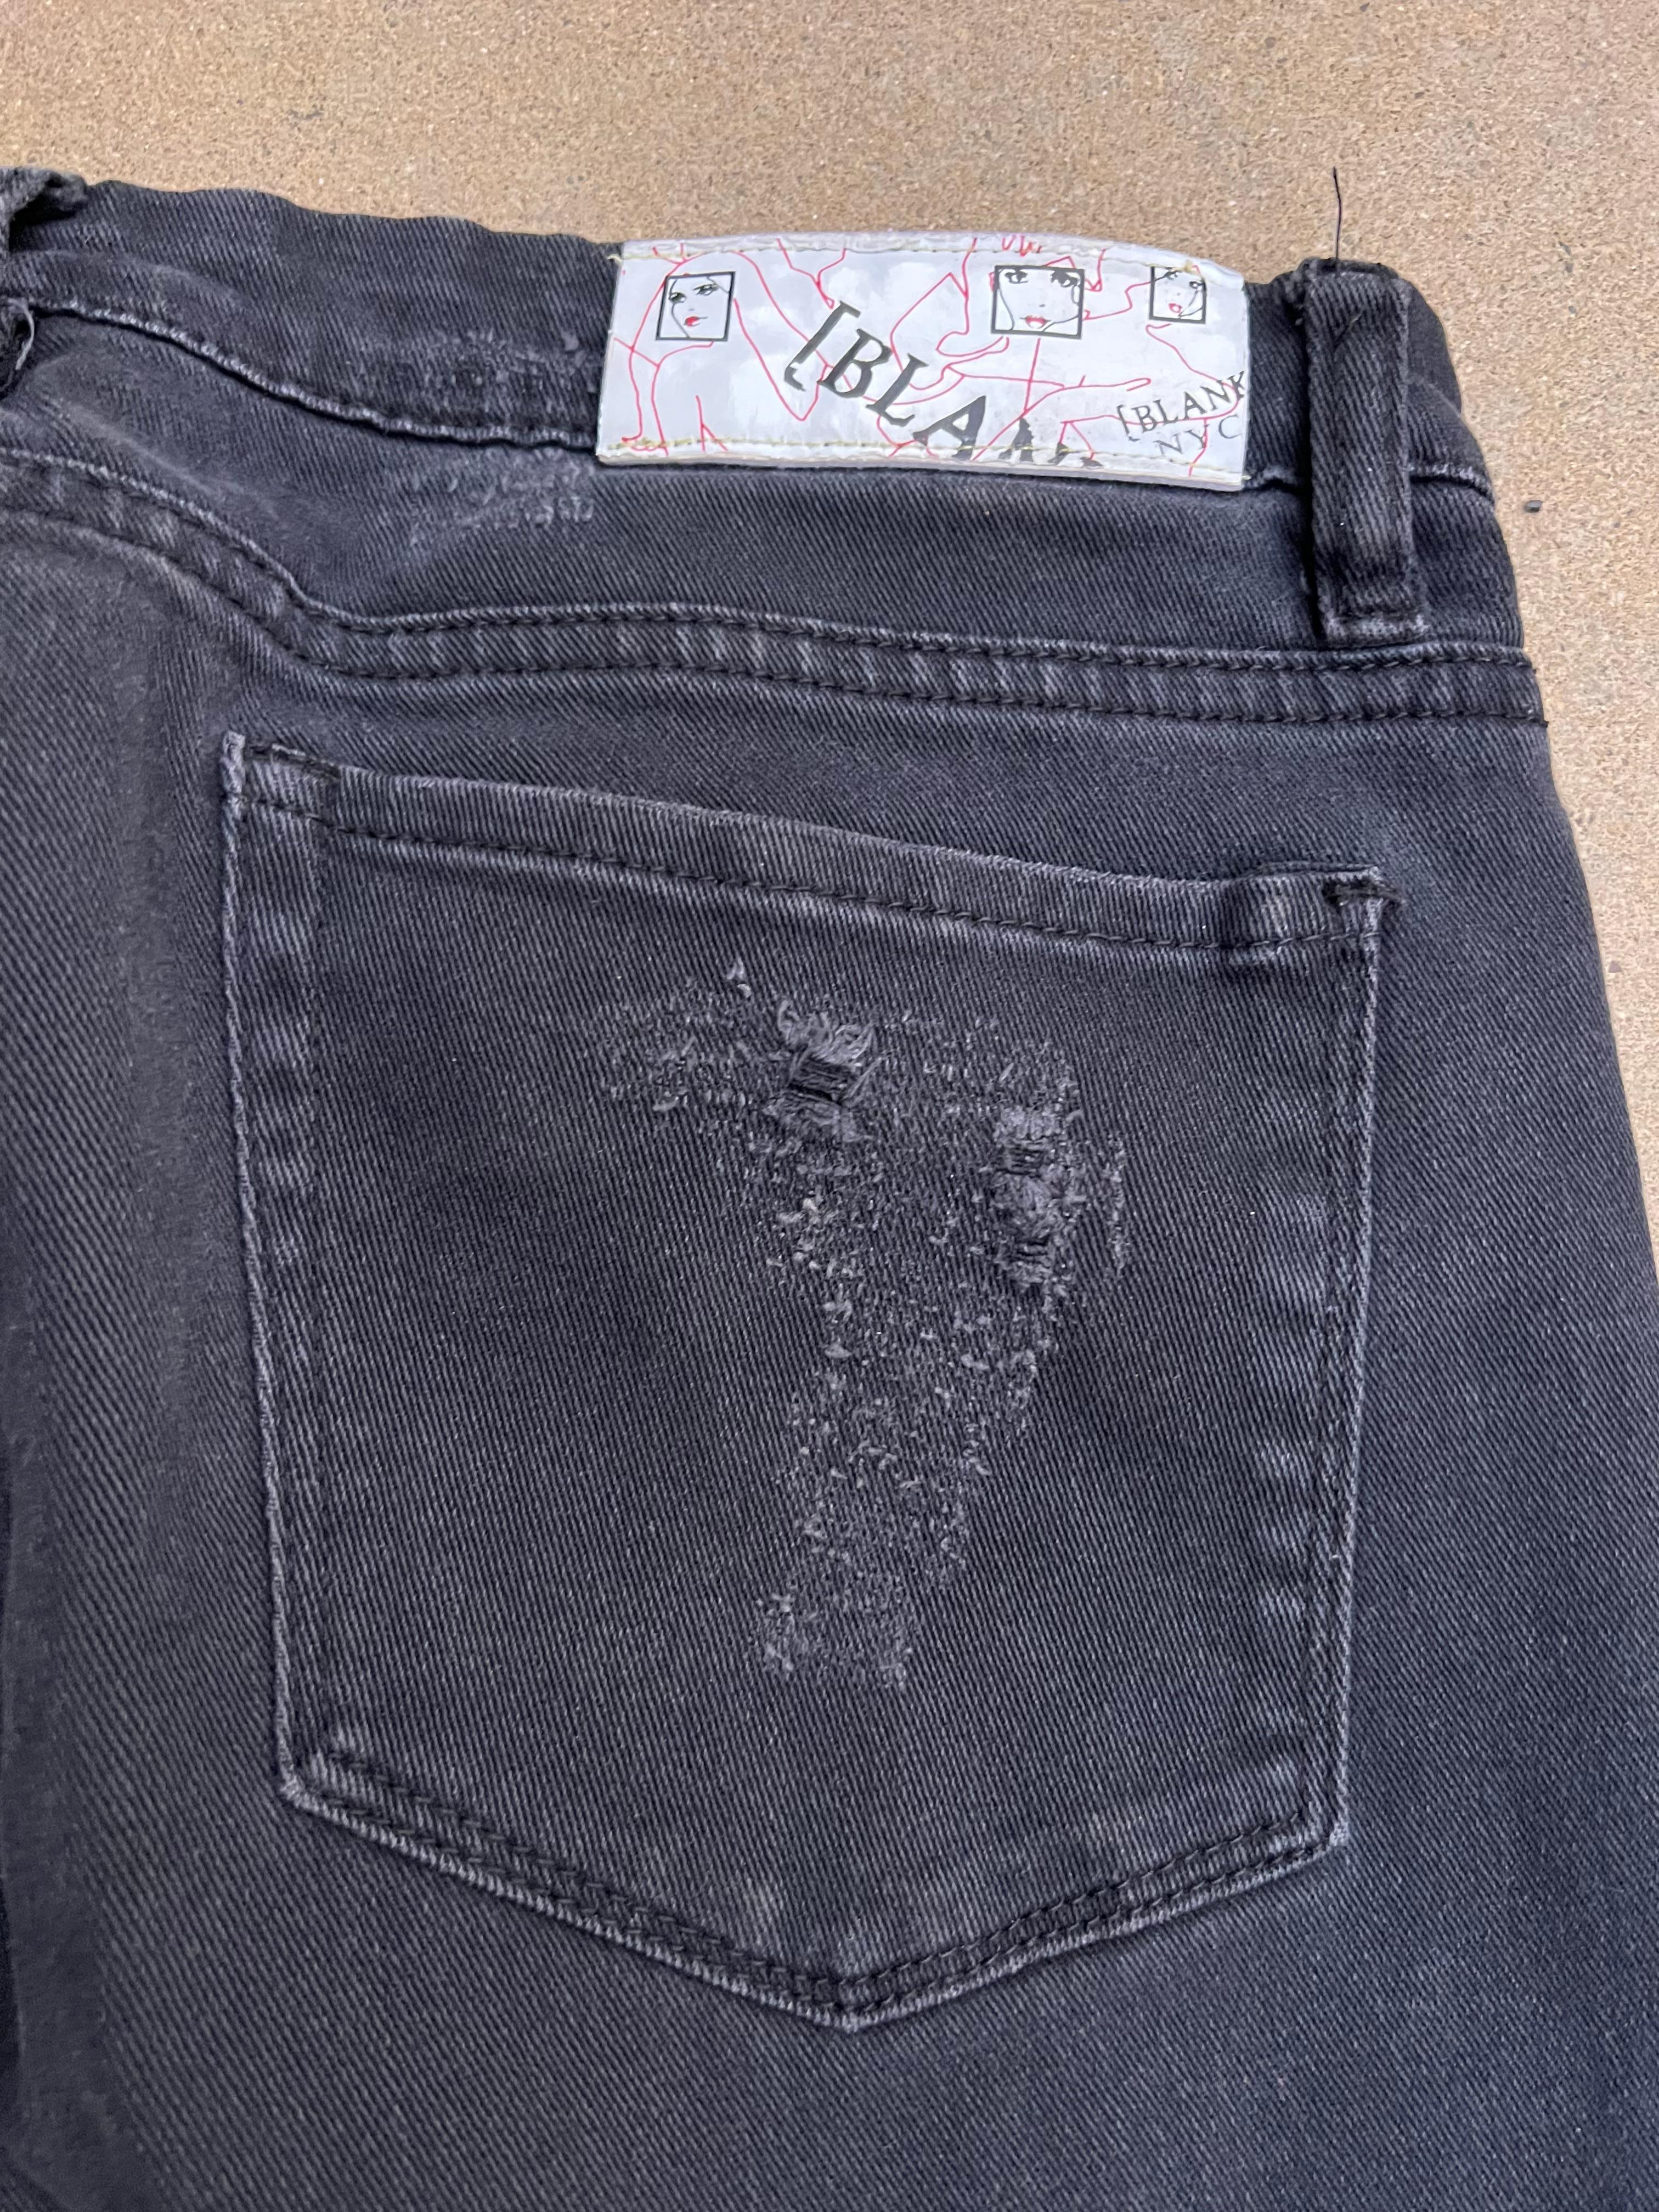 Blanki Black Denim Jeans, Size 31 For Sale 2